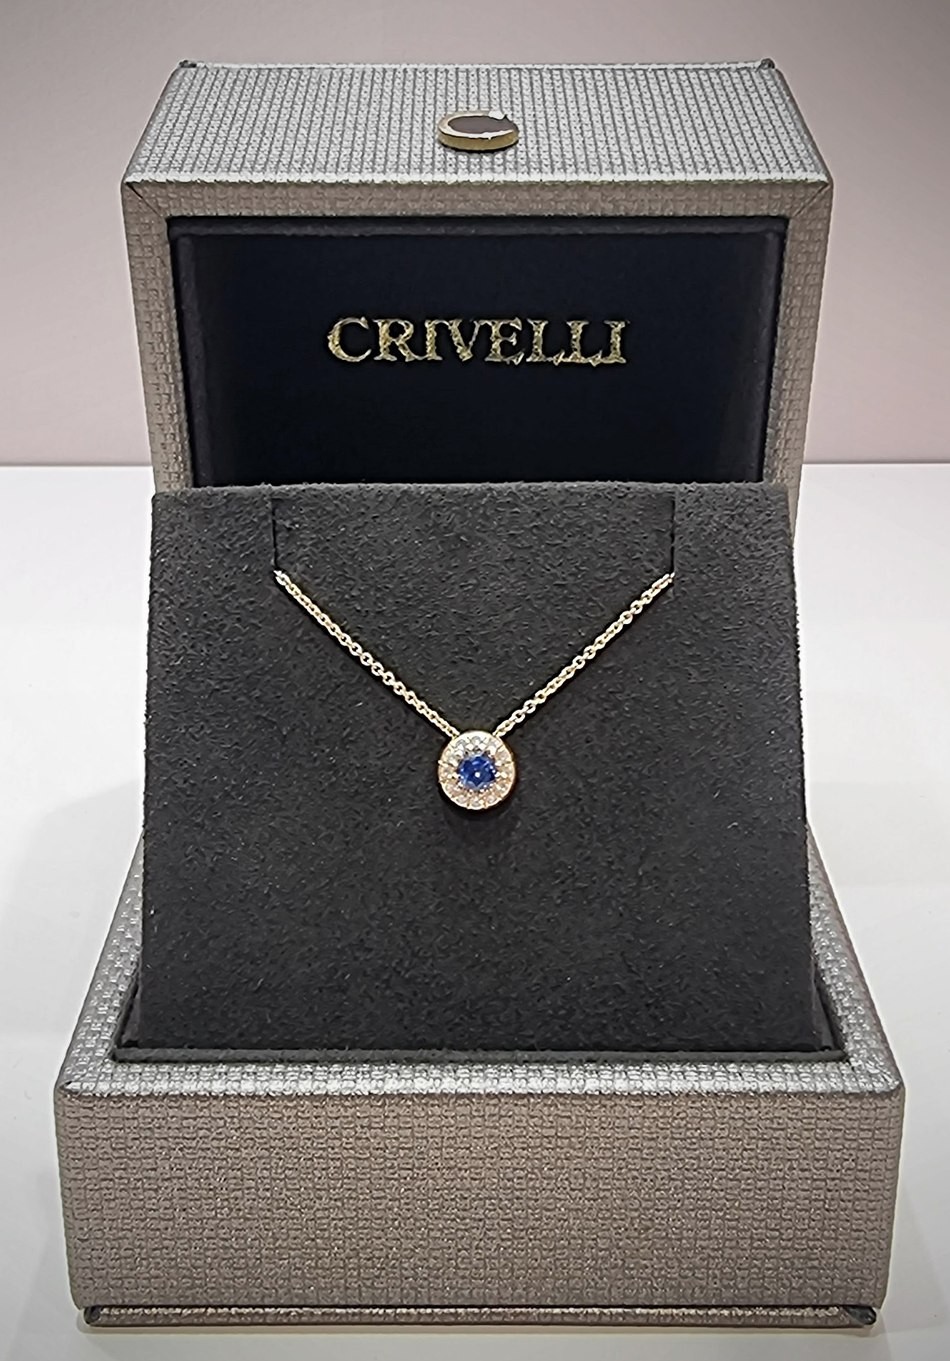 Crivelli rose gold necklace with diamonds and sapphire CRV212115 -  Gioielleria Loffredo